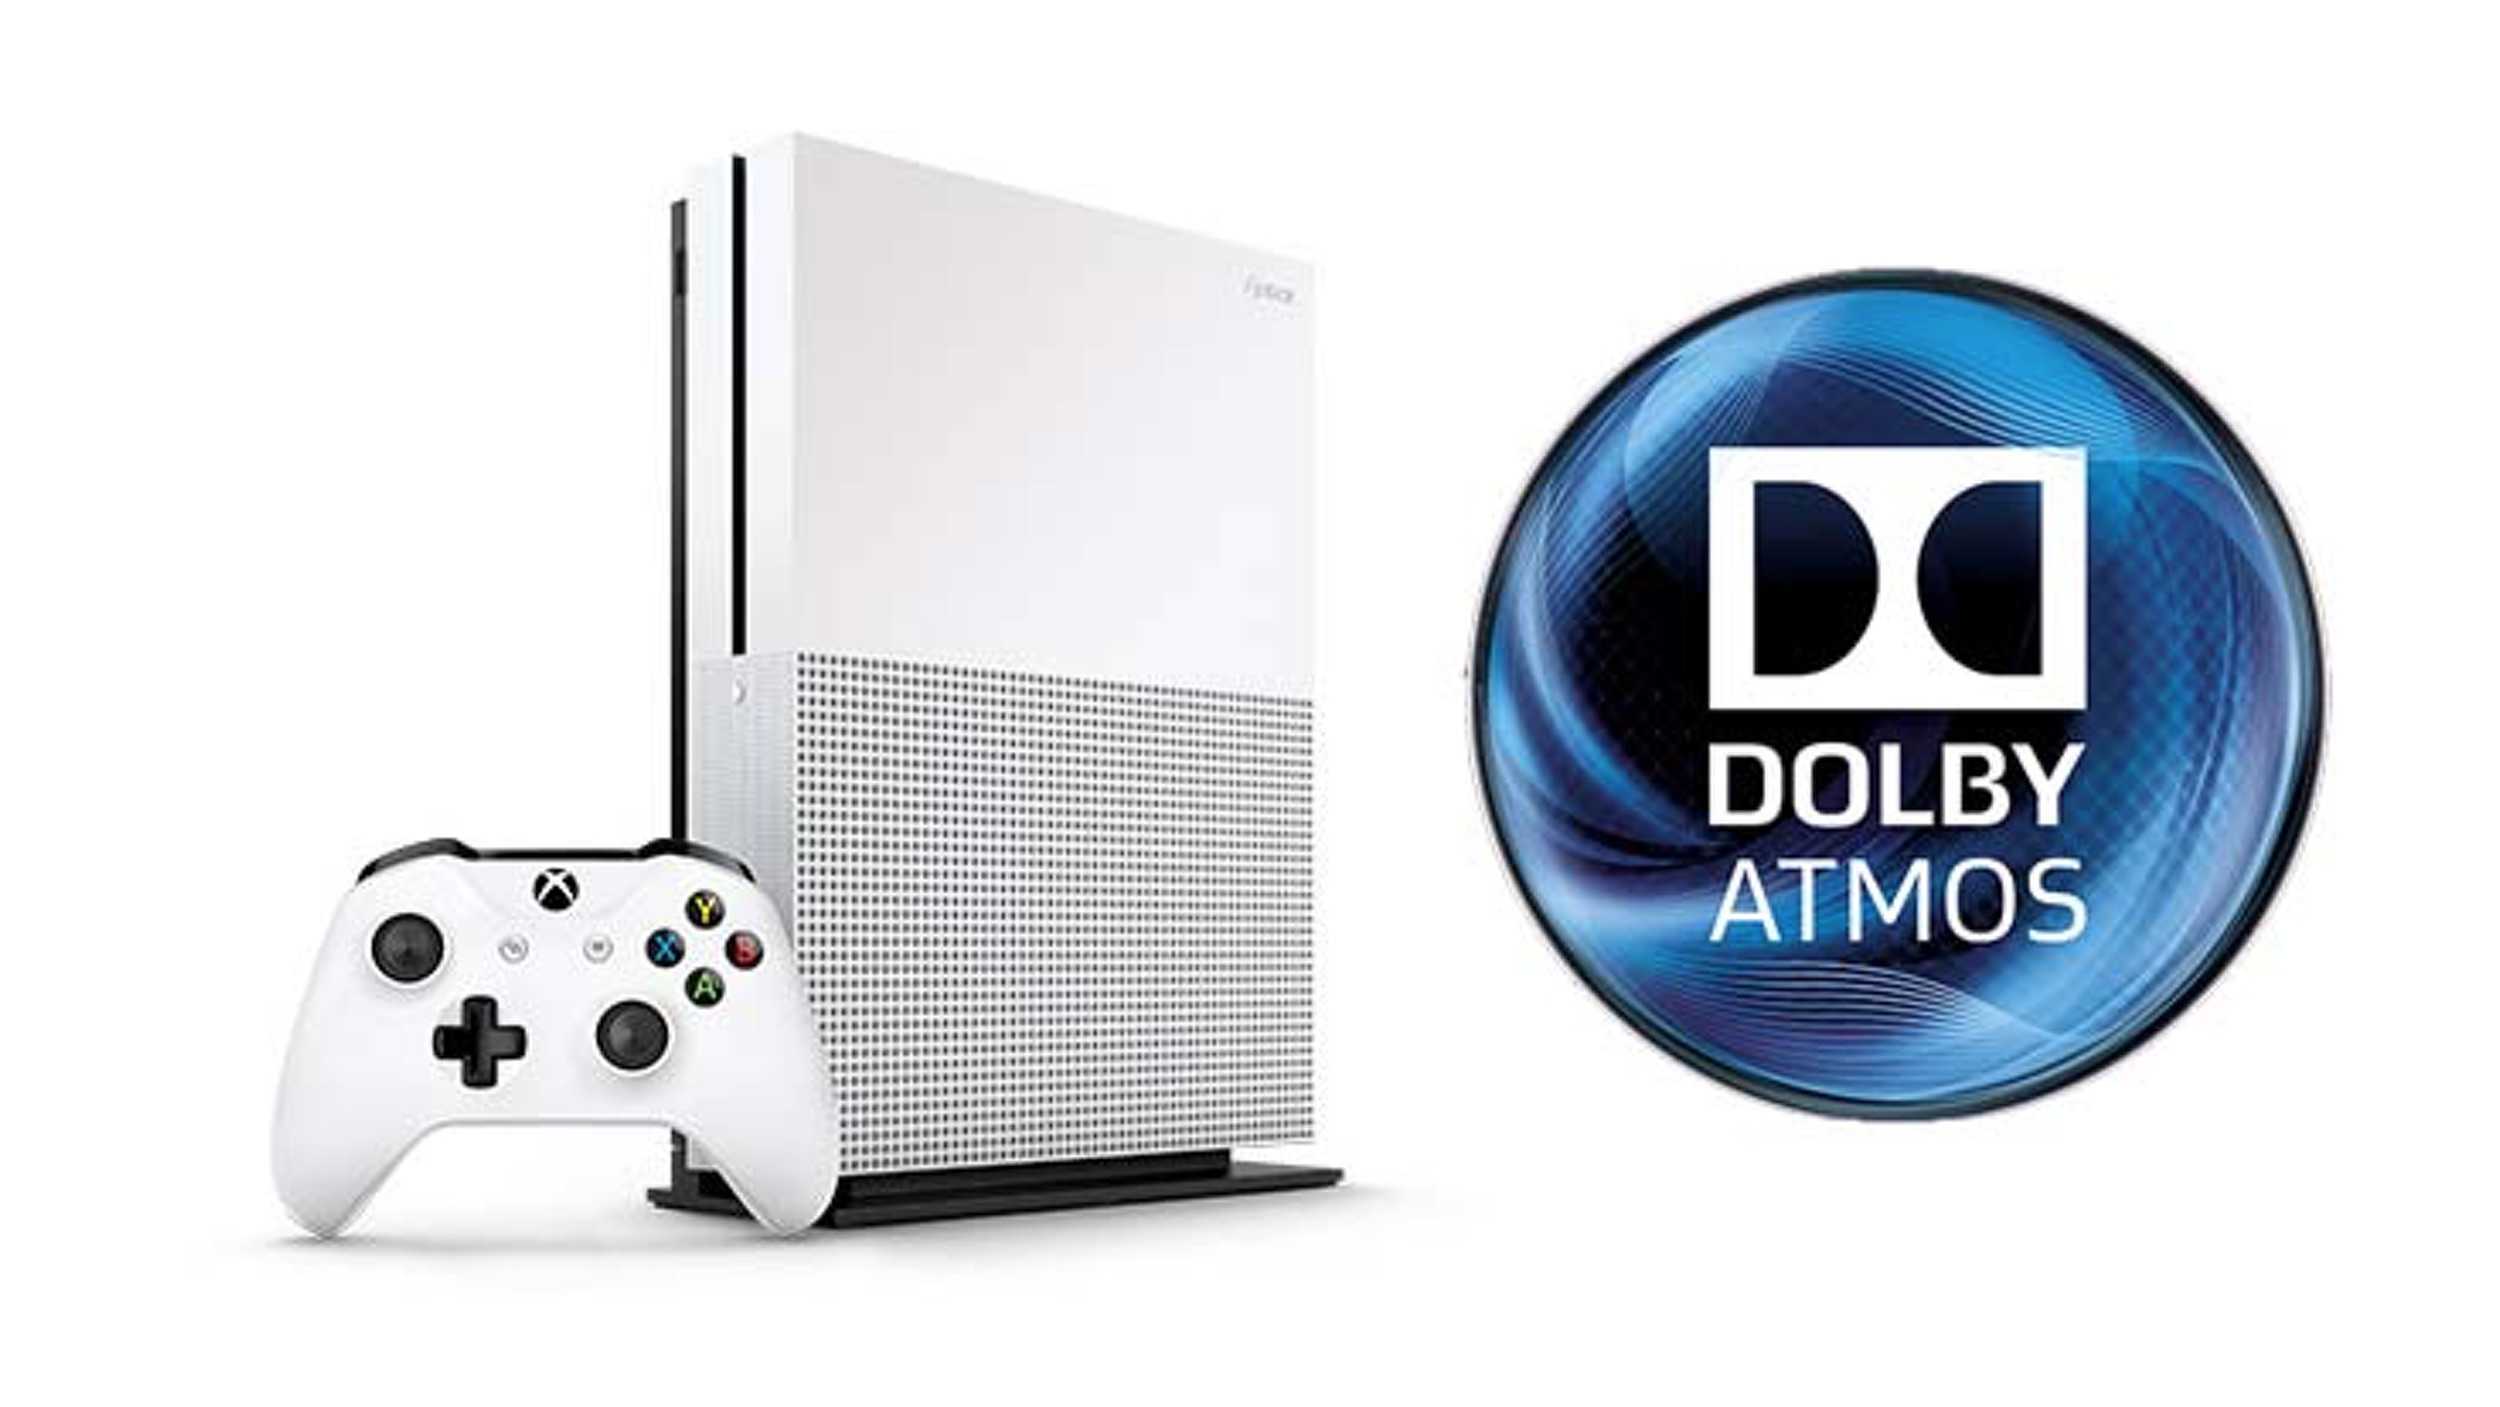 Dolby Atmos nos consoles chega primeiro ao Xbox One com Overwatch